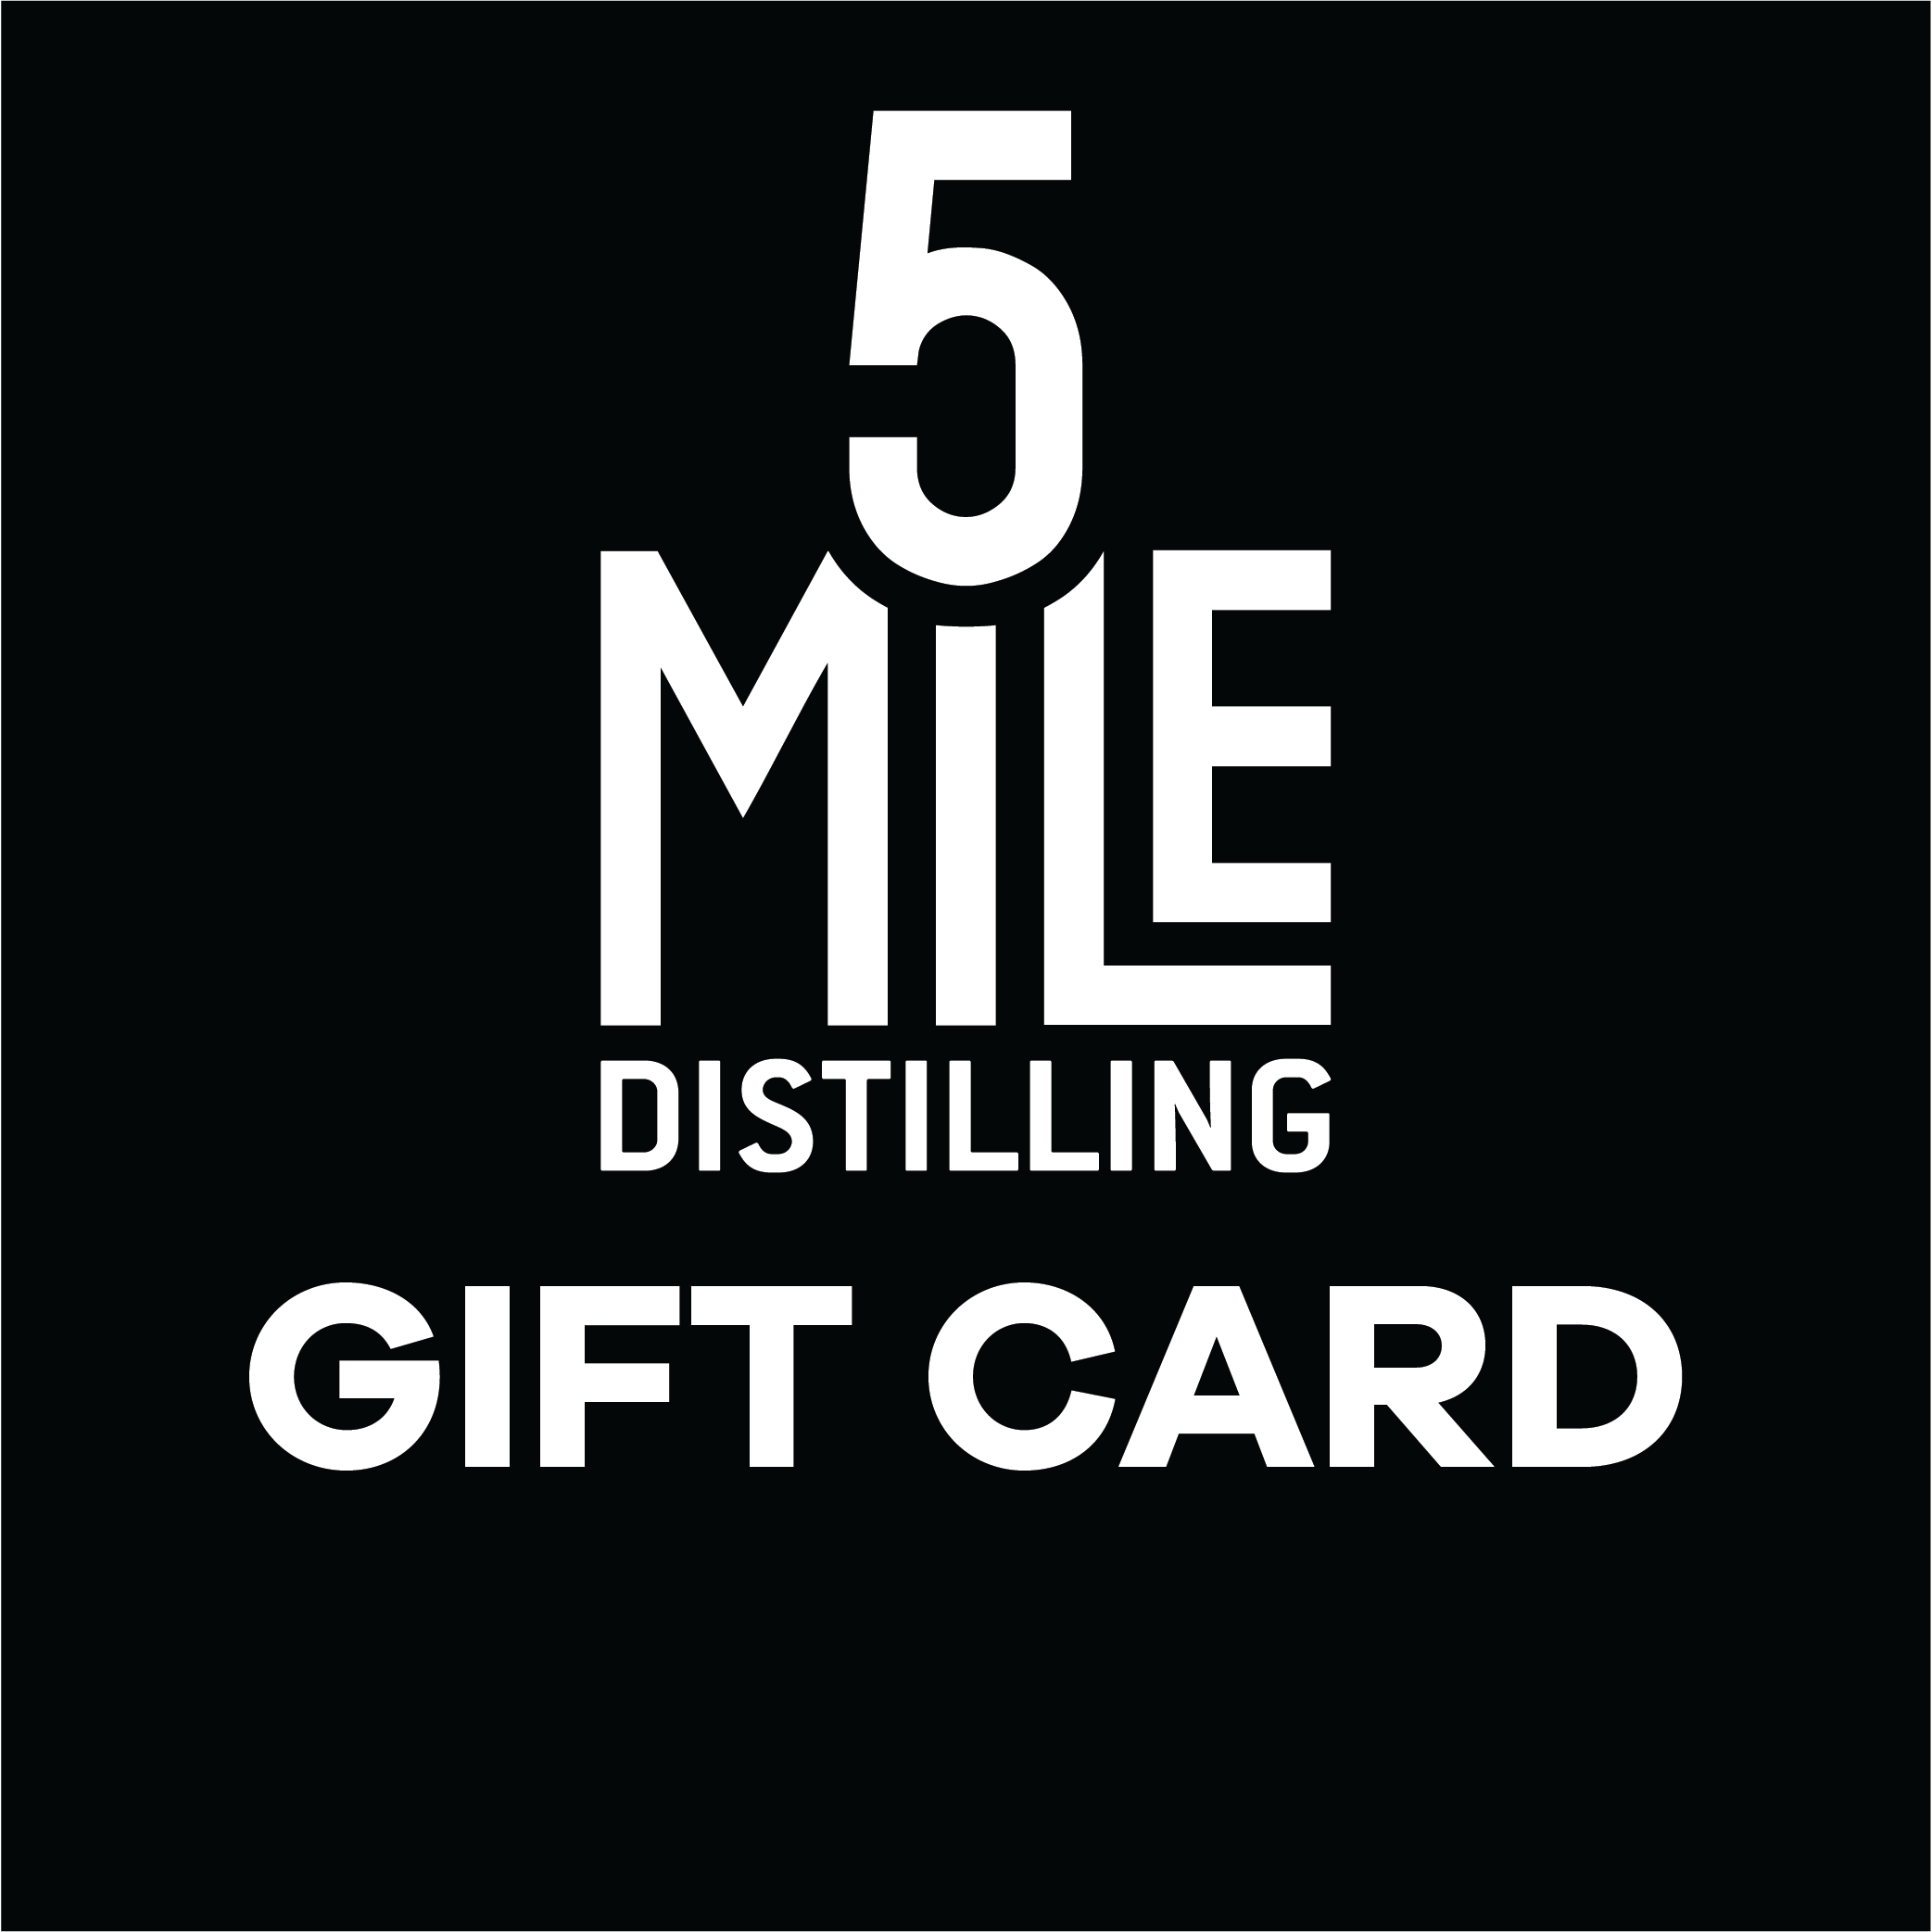 5 Mile Distilling Gift Card